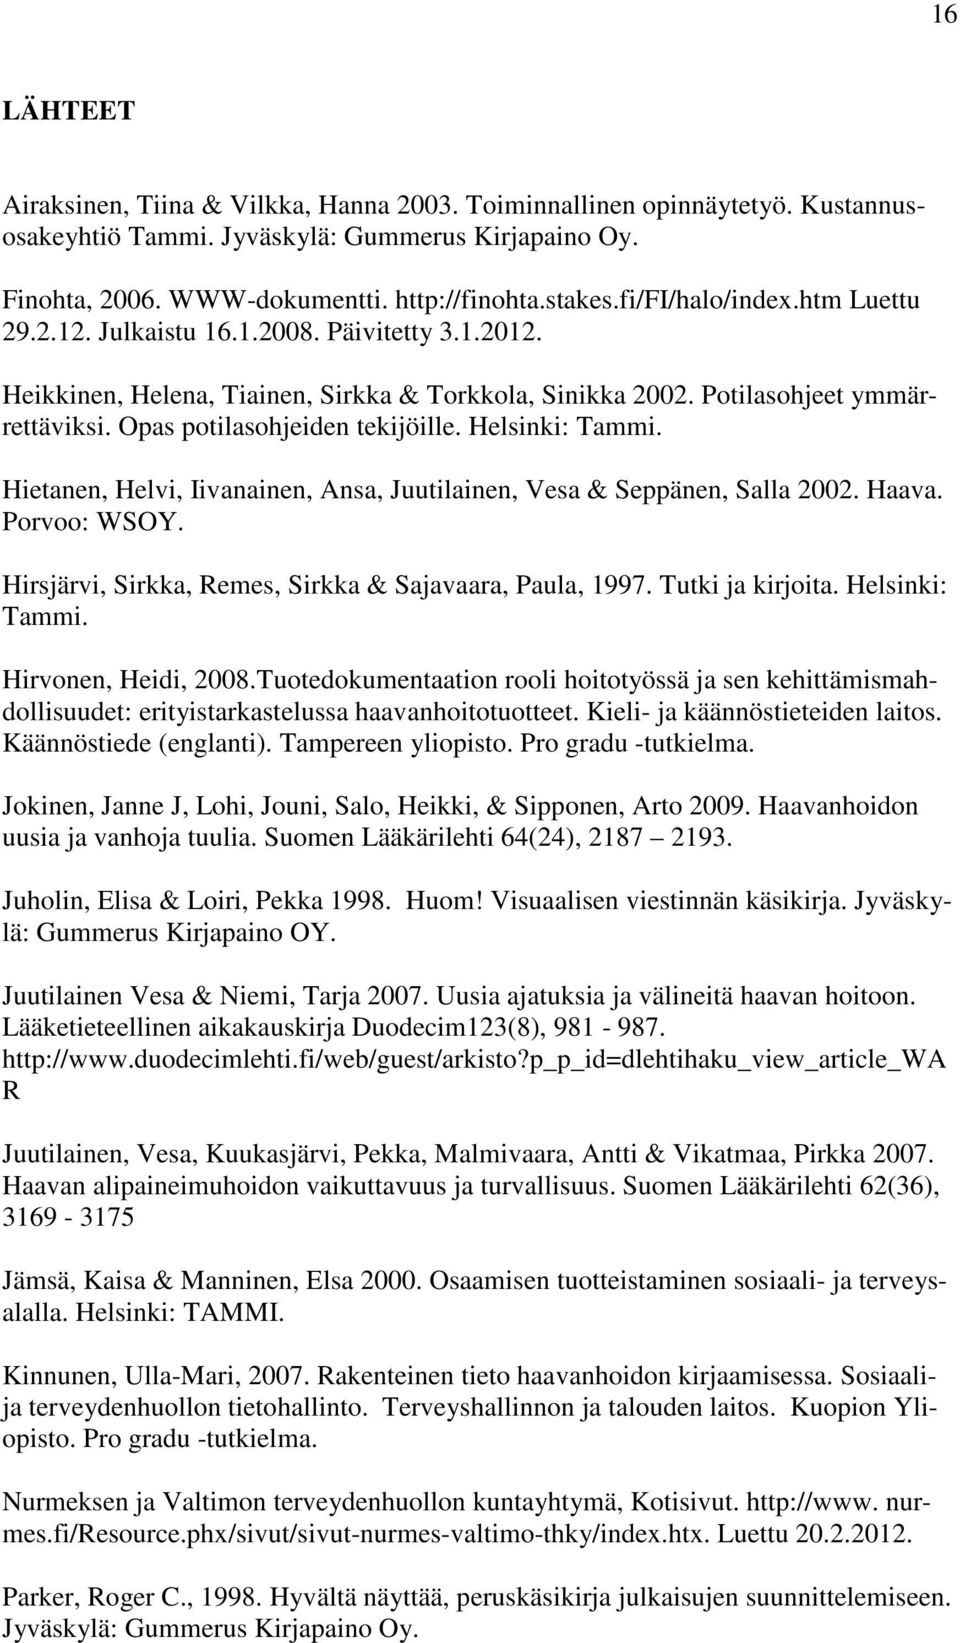 Opas potilasohjeiden tekijöille. Helsinki: Tammi. Hietanen, Helvi, Iivanainen, Ansa, Juutilainen, Vesa & Seppänen, Salla 2002. Haava. Porvoo: WSOY.